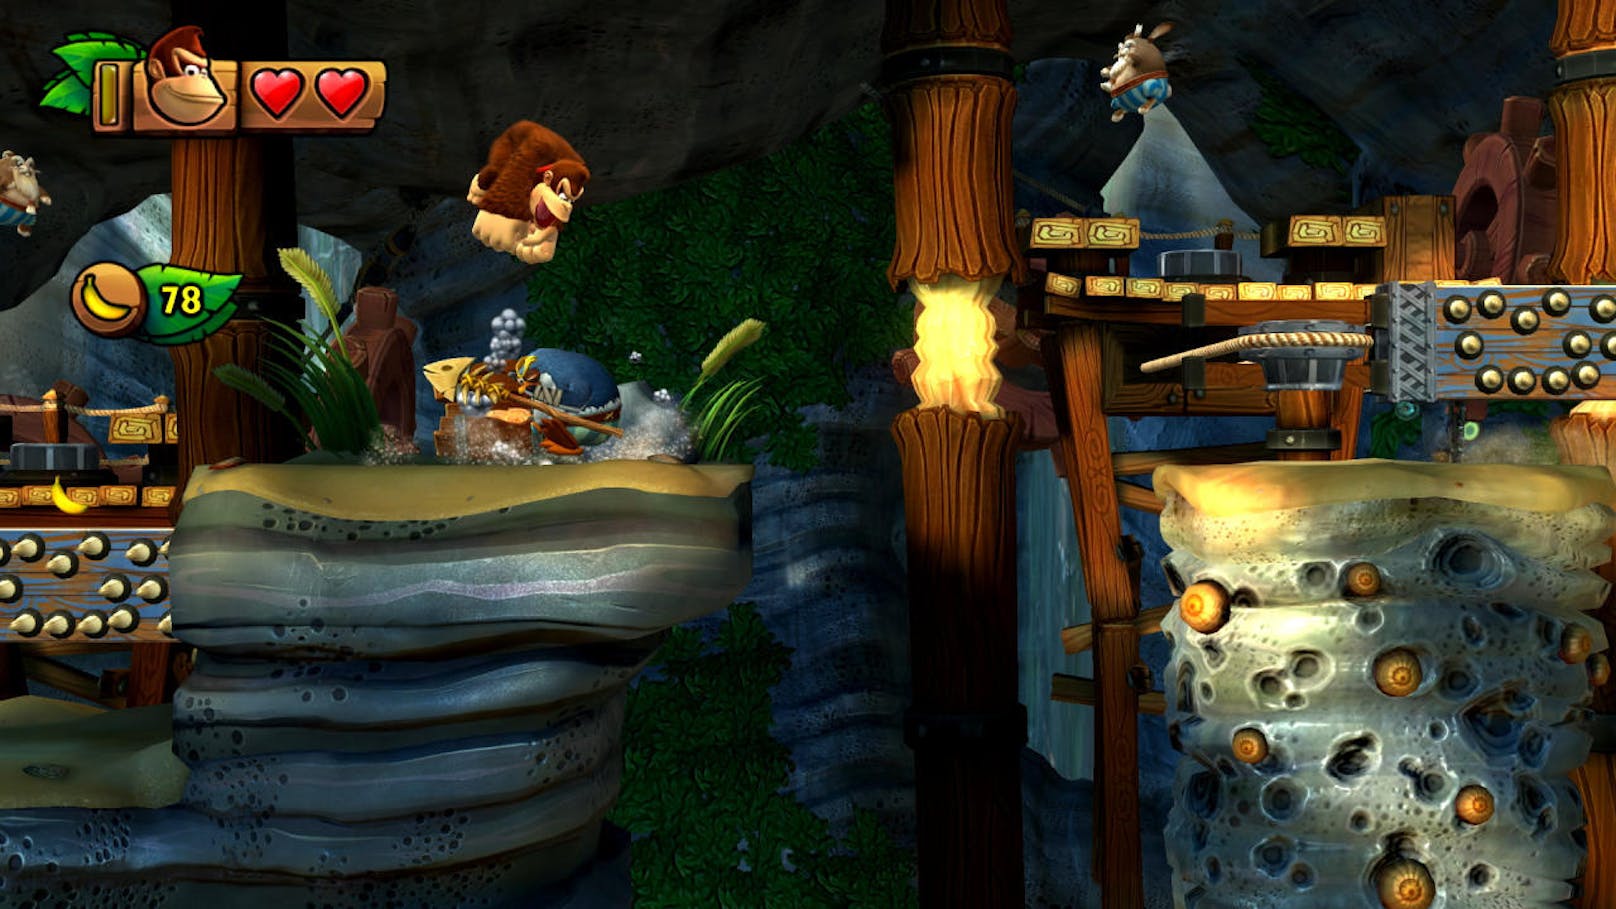 Das Besondere am Modus ist, dass der Spieler eine neue Figur, nämlich Funky Kong steuern. Dieser hat Donkey einige Fähigkeiten voraus, was ihn leichter durch die Levels kommen lässt.